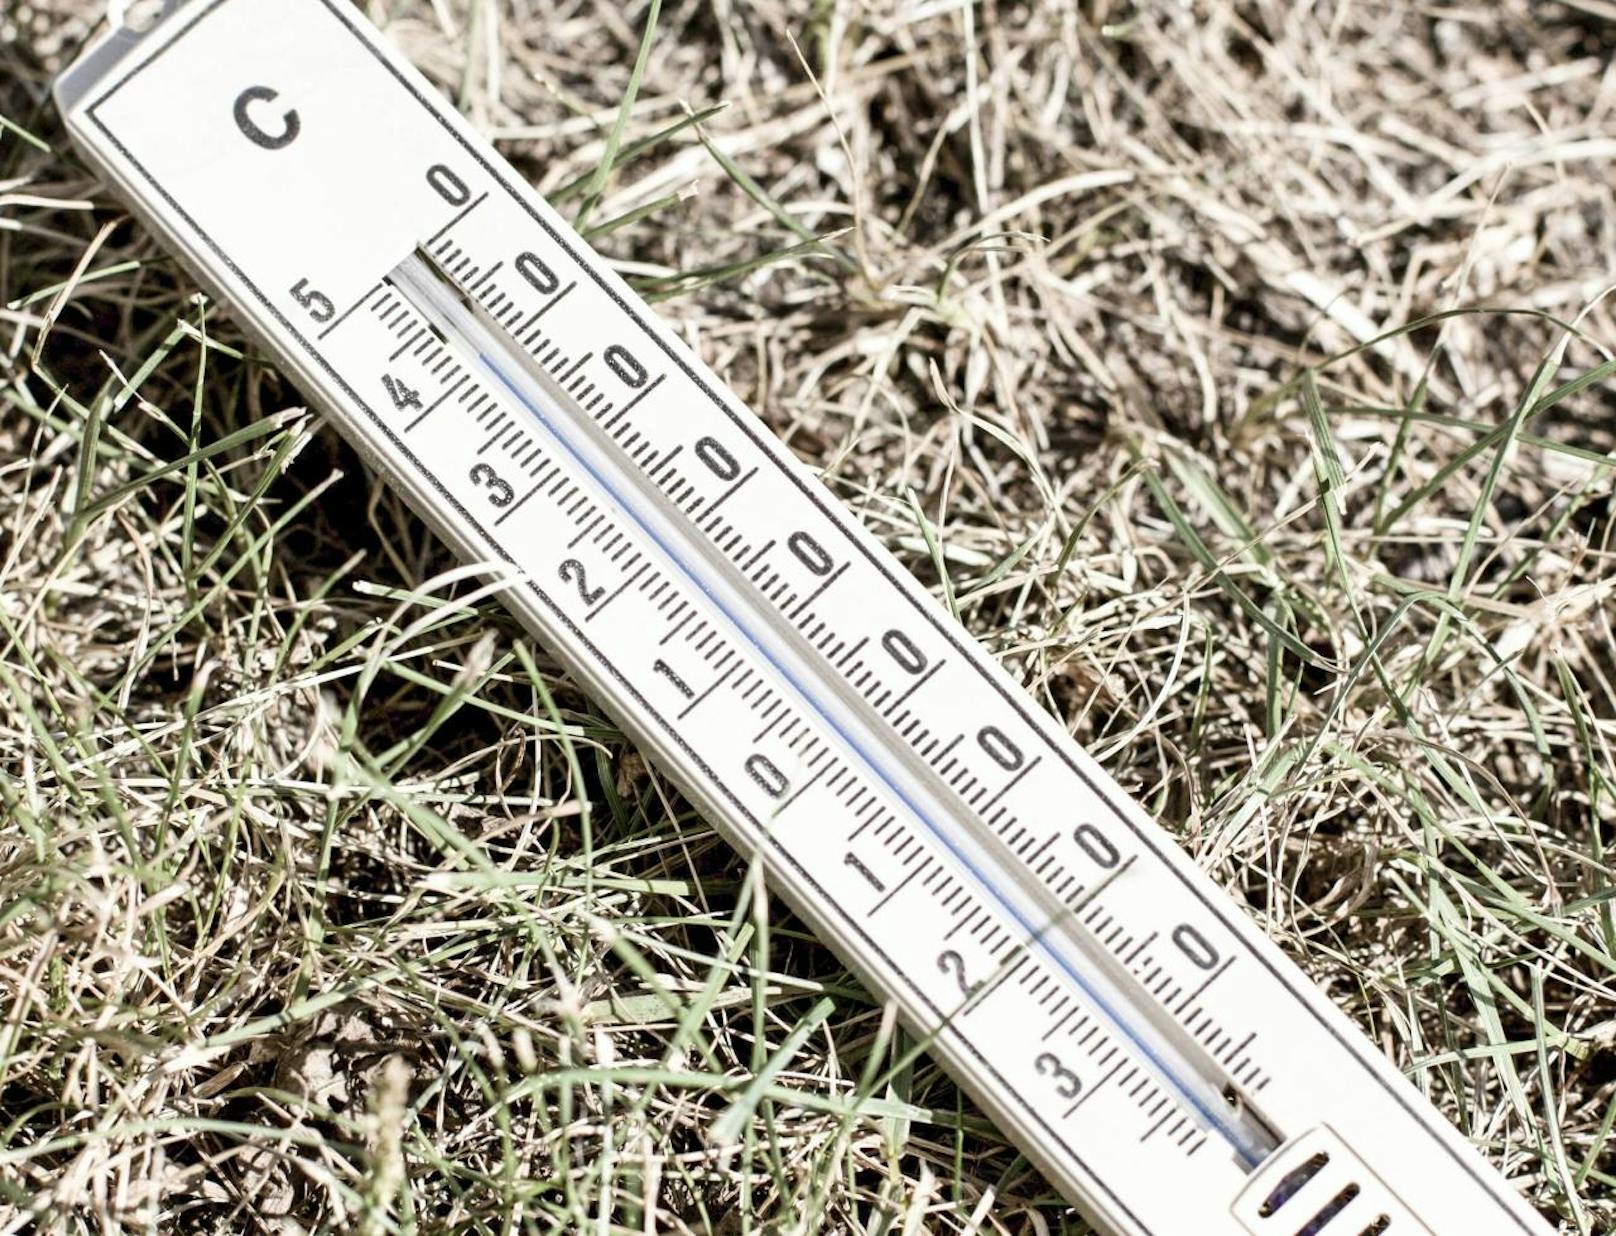  Seit dem Frühjahr gibt es ungewöhnlich lange und stabile Hochdruckphasen und dazu sehr hohe Temperaturen - die Folge: Dürre.